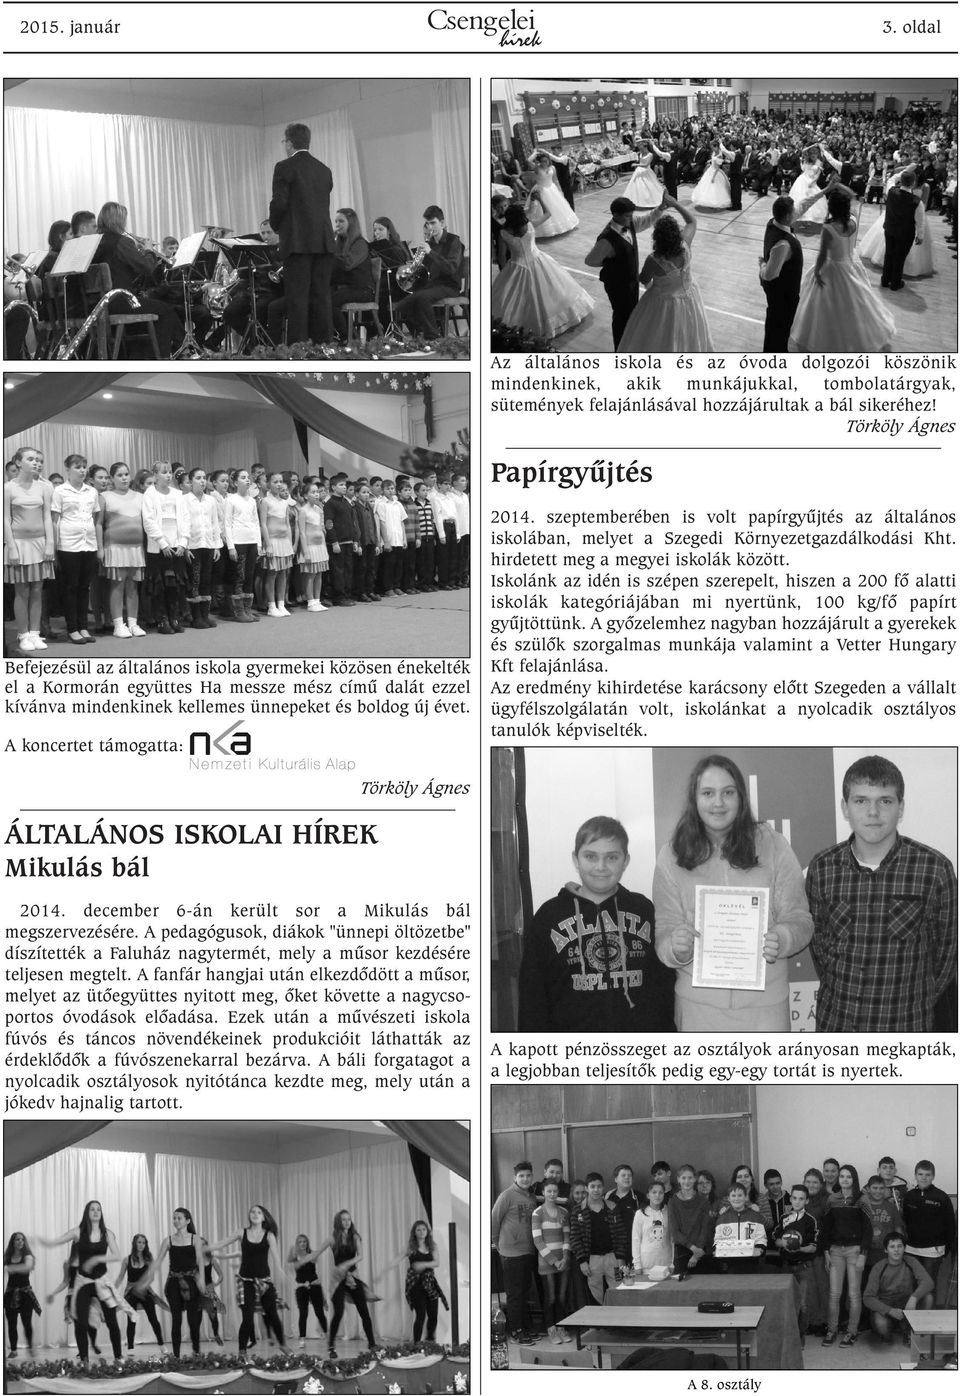 A koncertet támogatta: 2014. szeptemberében is volt papírgyûjtés az általános iskolában, melyet a Szegedi Környezetgazdálkodási Kht. hirdetett meg a megyei iskolák között.